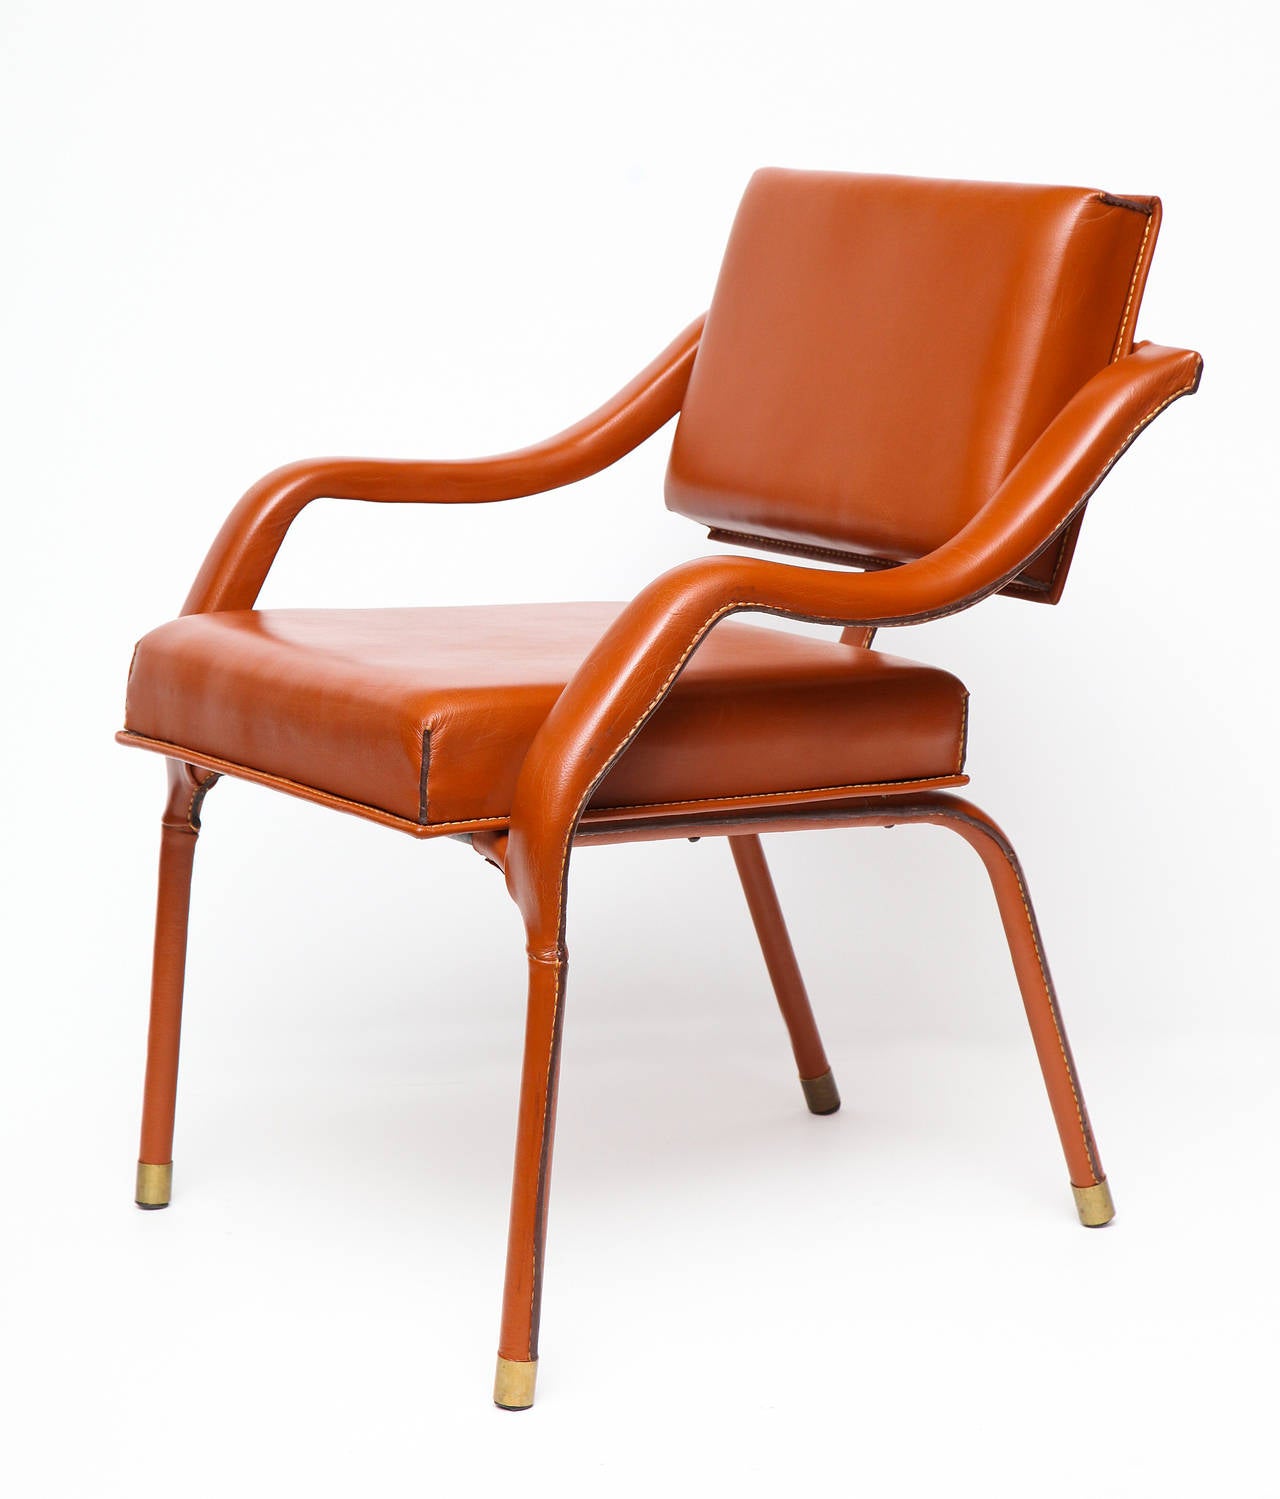 1960s leather armchair with metal sabots by Jacques Quinet.

An armchair with similar features is illustrated in Maldonando, Guitemie. Jacques Quinet. Paris: Les éditions de l'Amateur, 2000. 136.